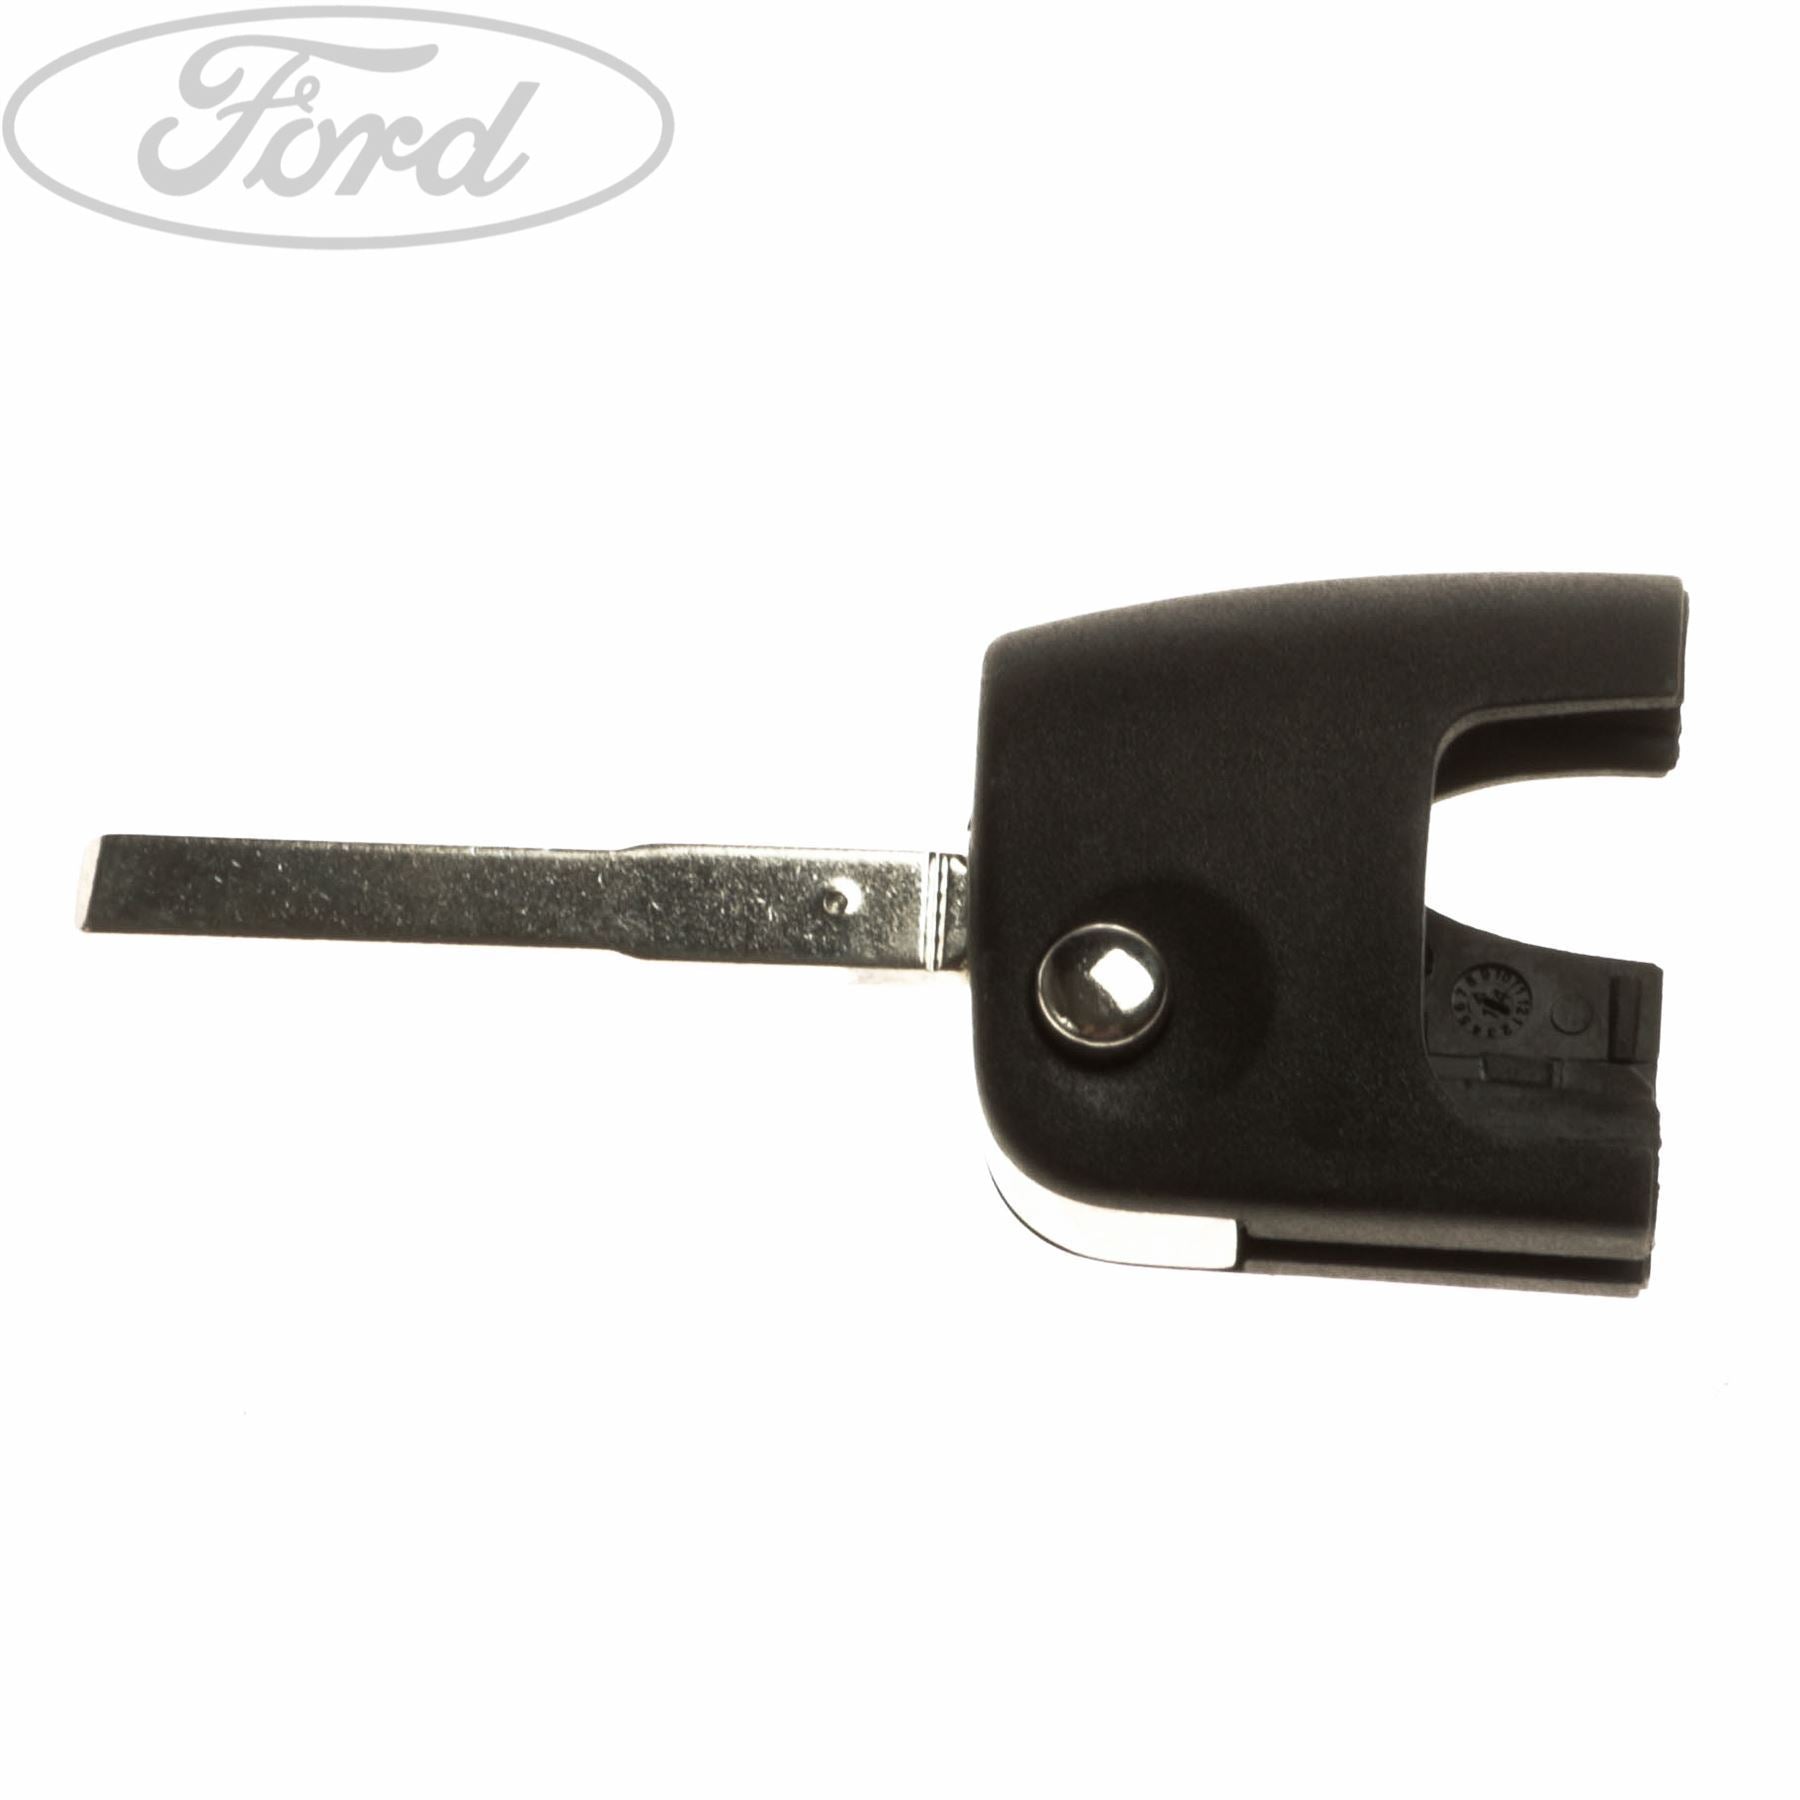 Ford Schlüssel - mit separatem Transponderfach - Schlüsselblatt FO21 -  After Market Produkt